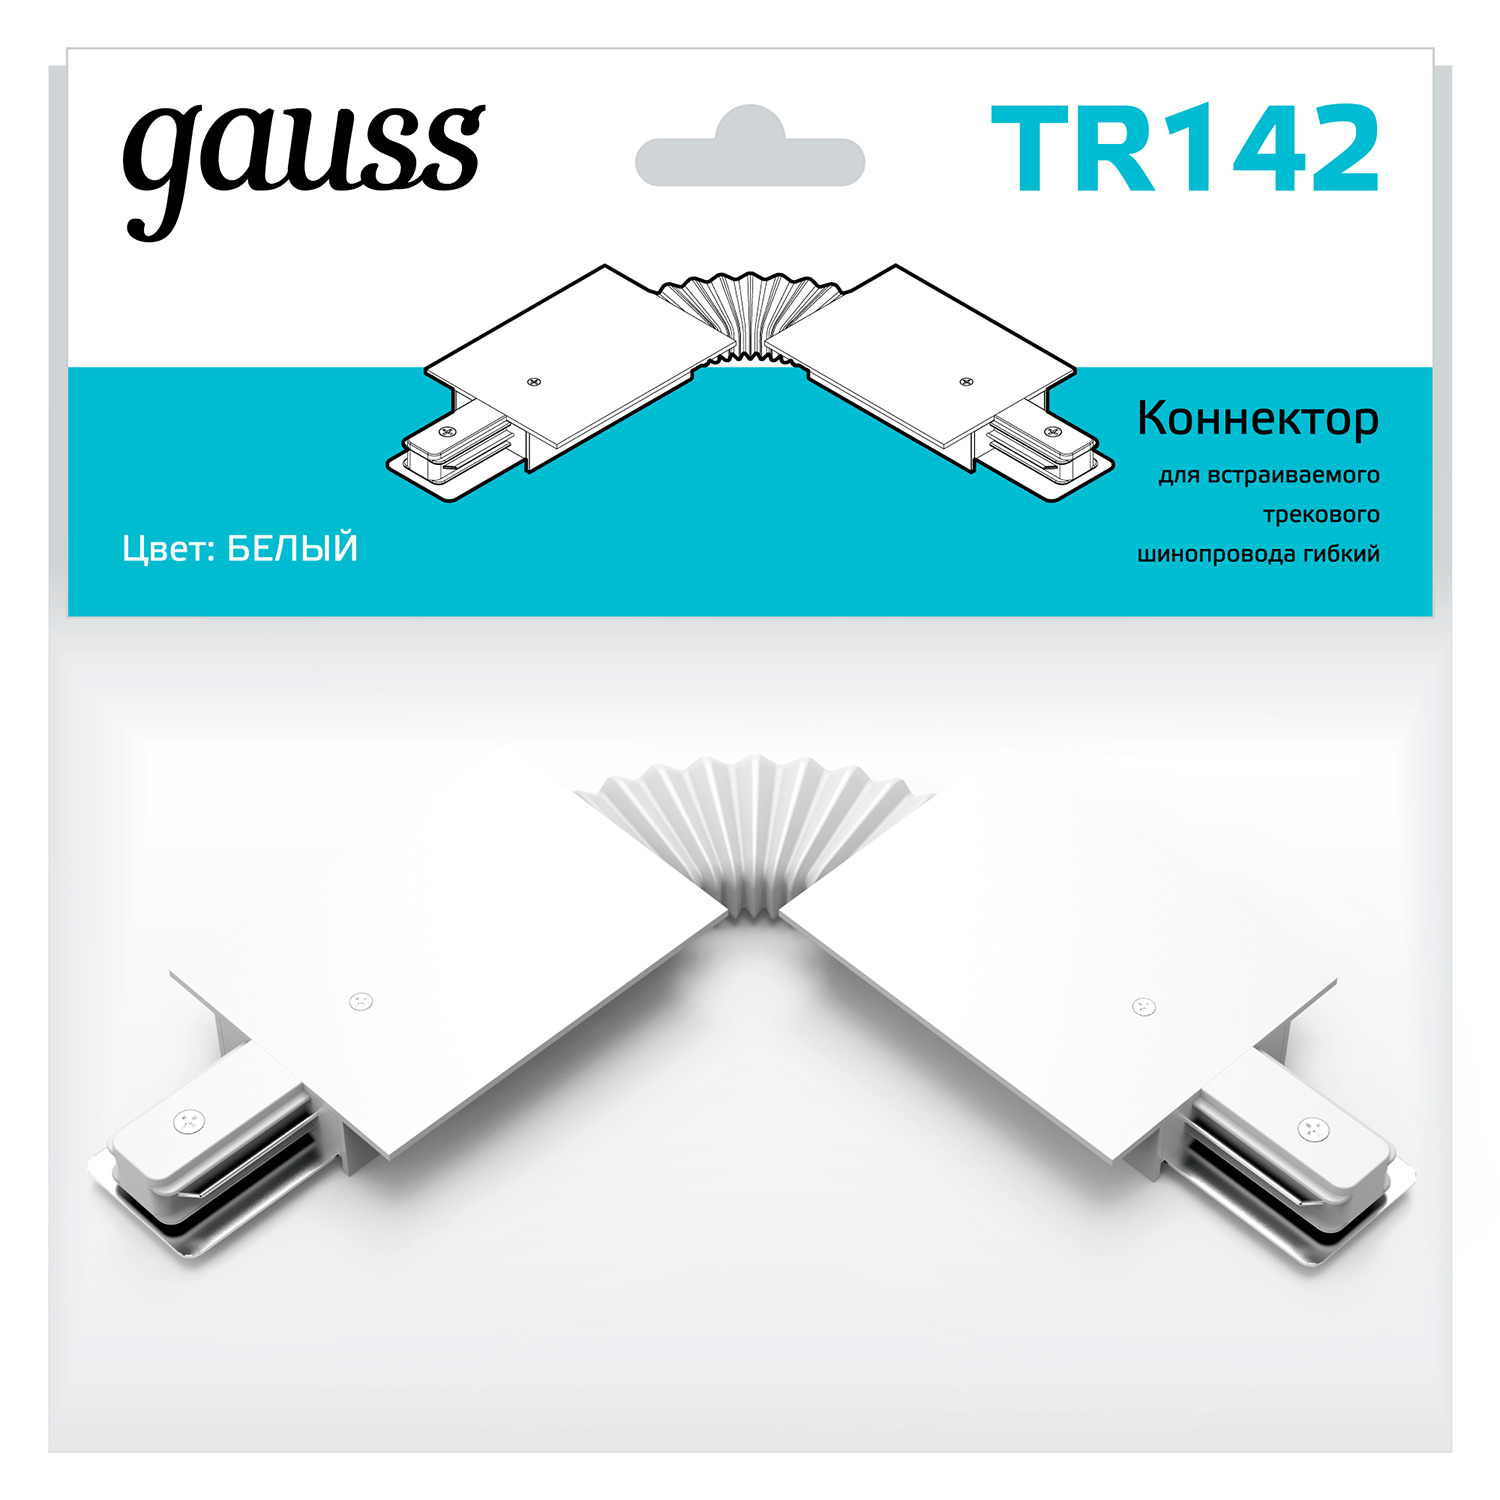 Коннектор Gauss для встраиваемых трековых шинопроводов гибкий (I) белый светильники gauss коннектор для встраиваемых трековых шинопроводов x образный